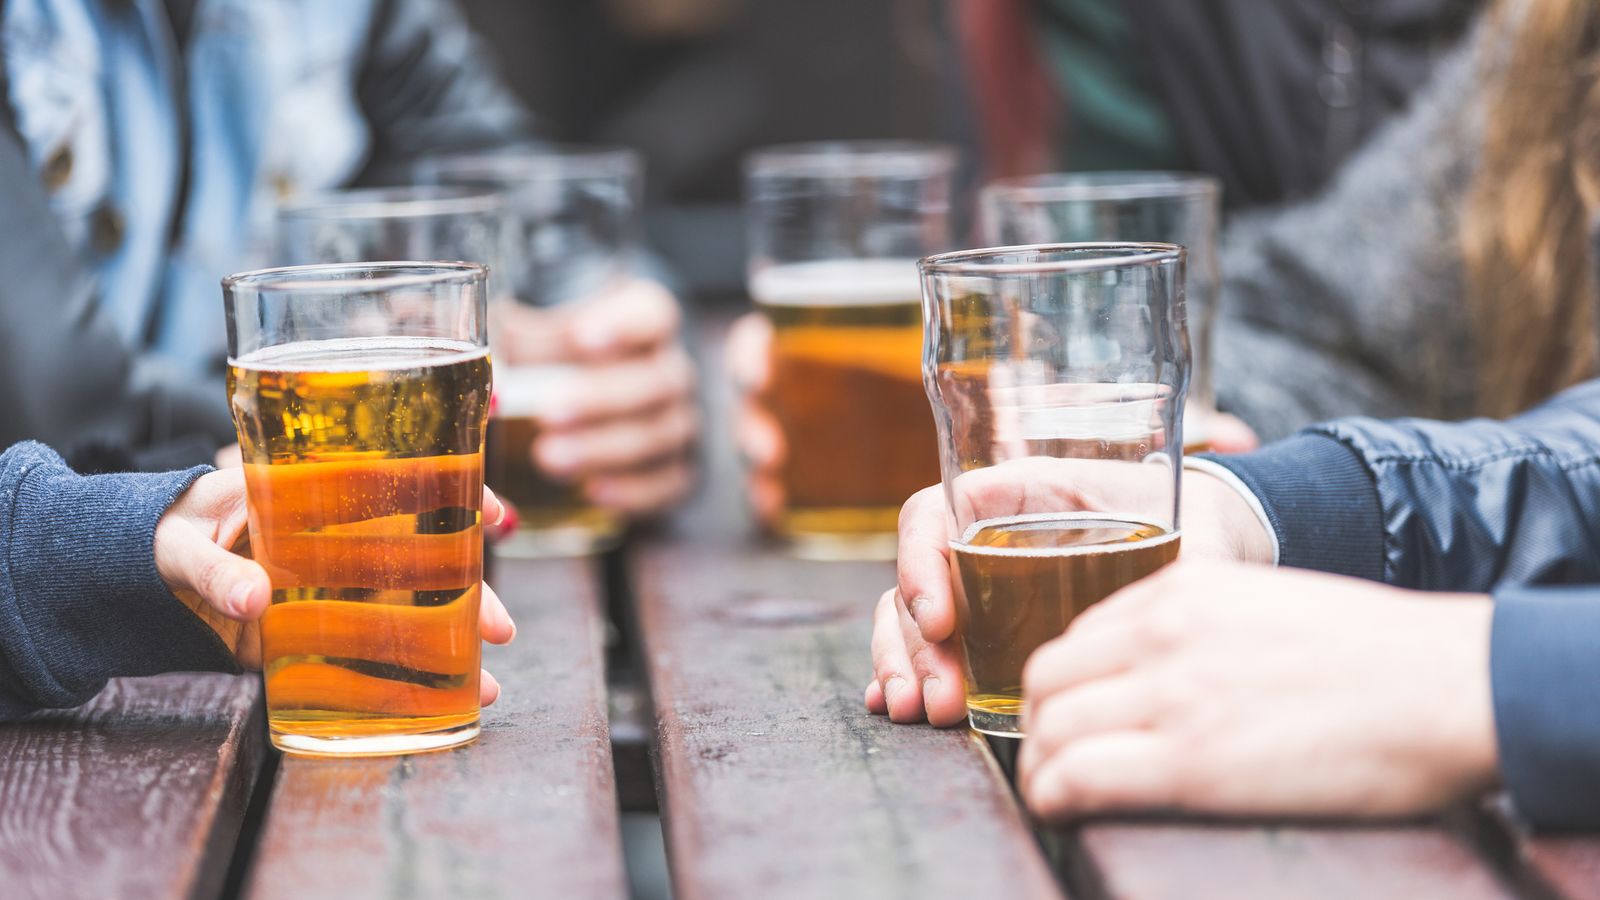 Само едно алкохолно питие на ден може да повиши кръвното налягане, установява проучване